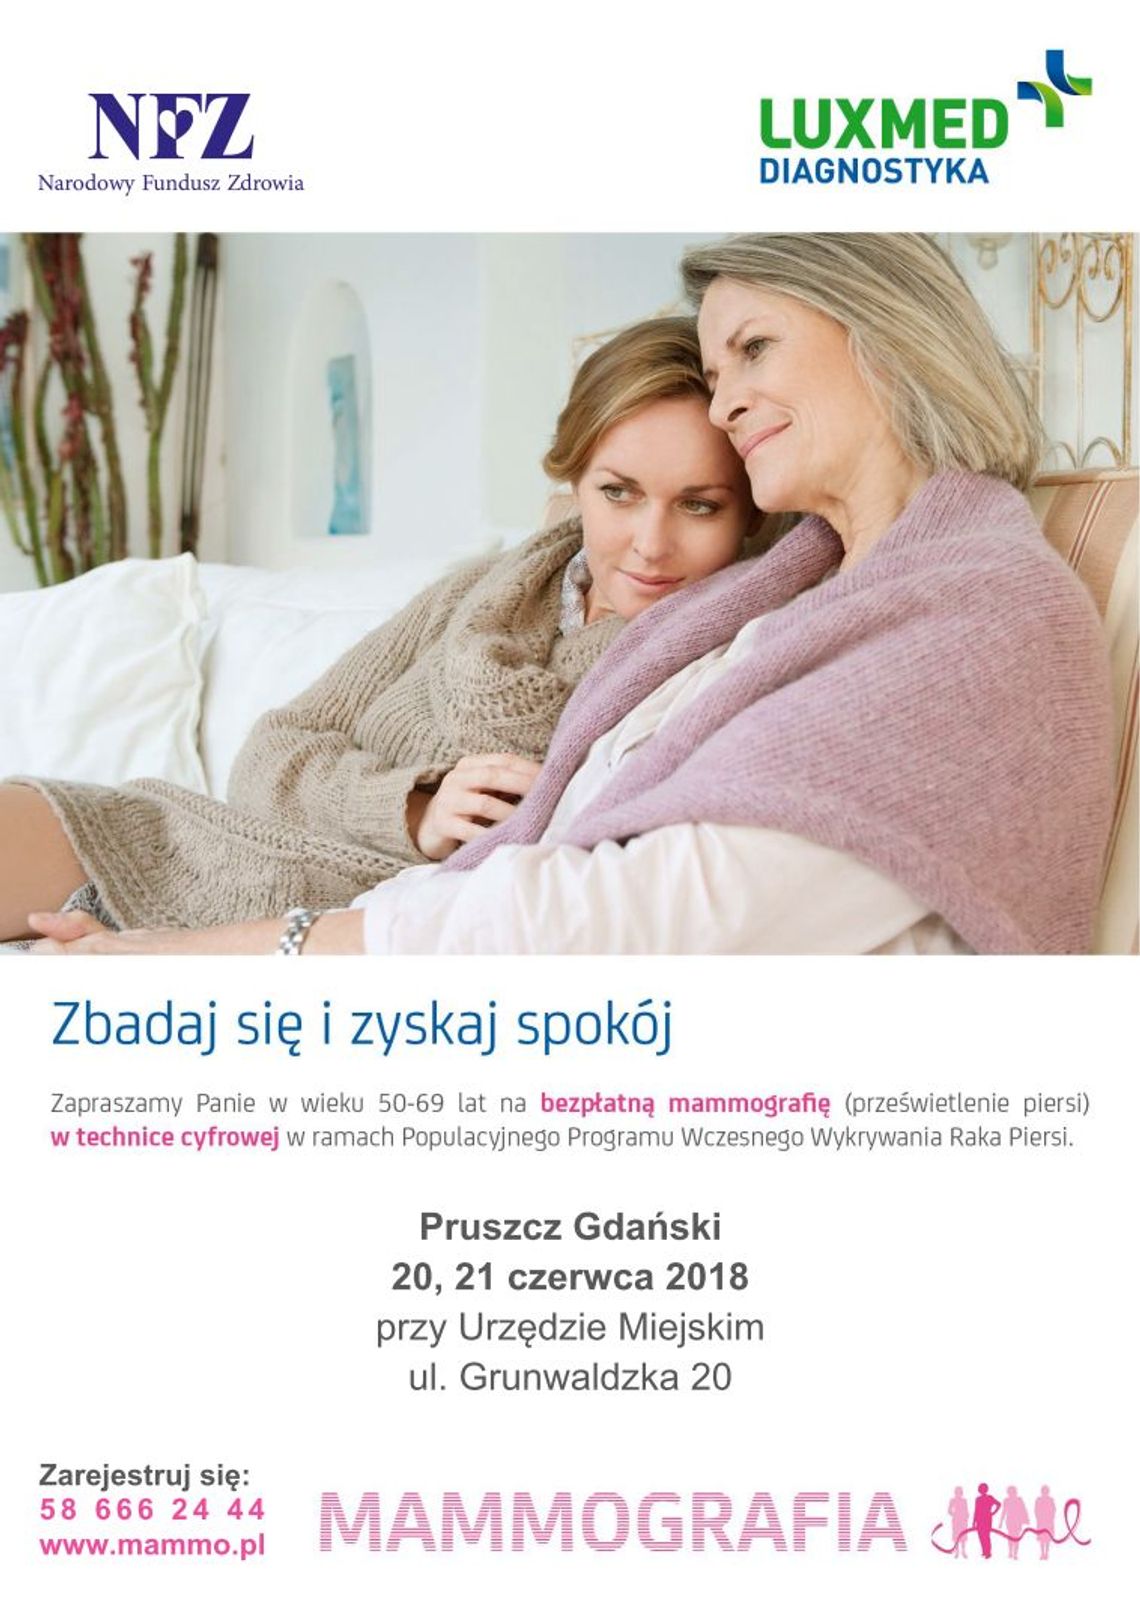 Bezpłatne badania mammograficzne w  Pruszczu Gdańskim